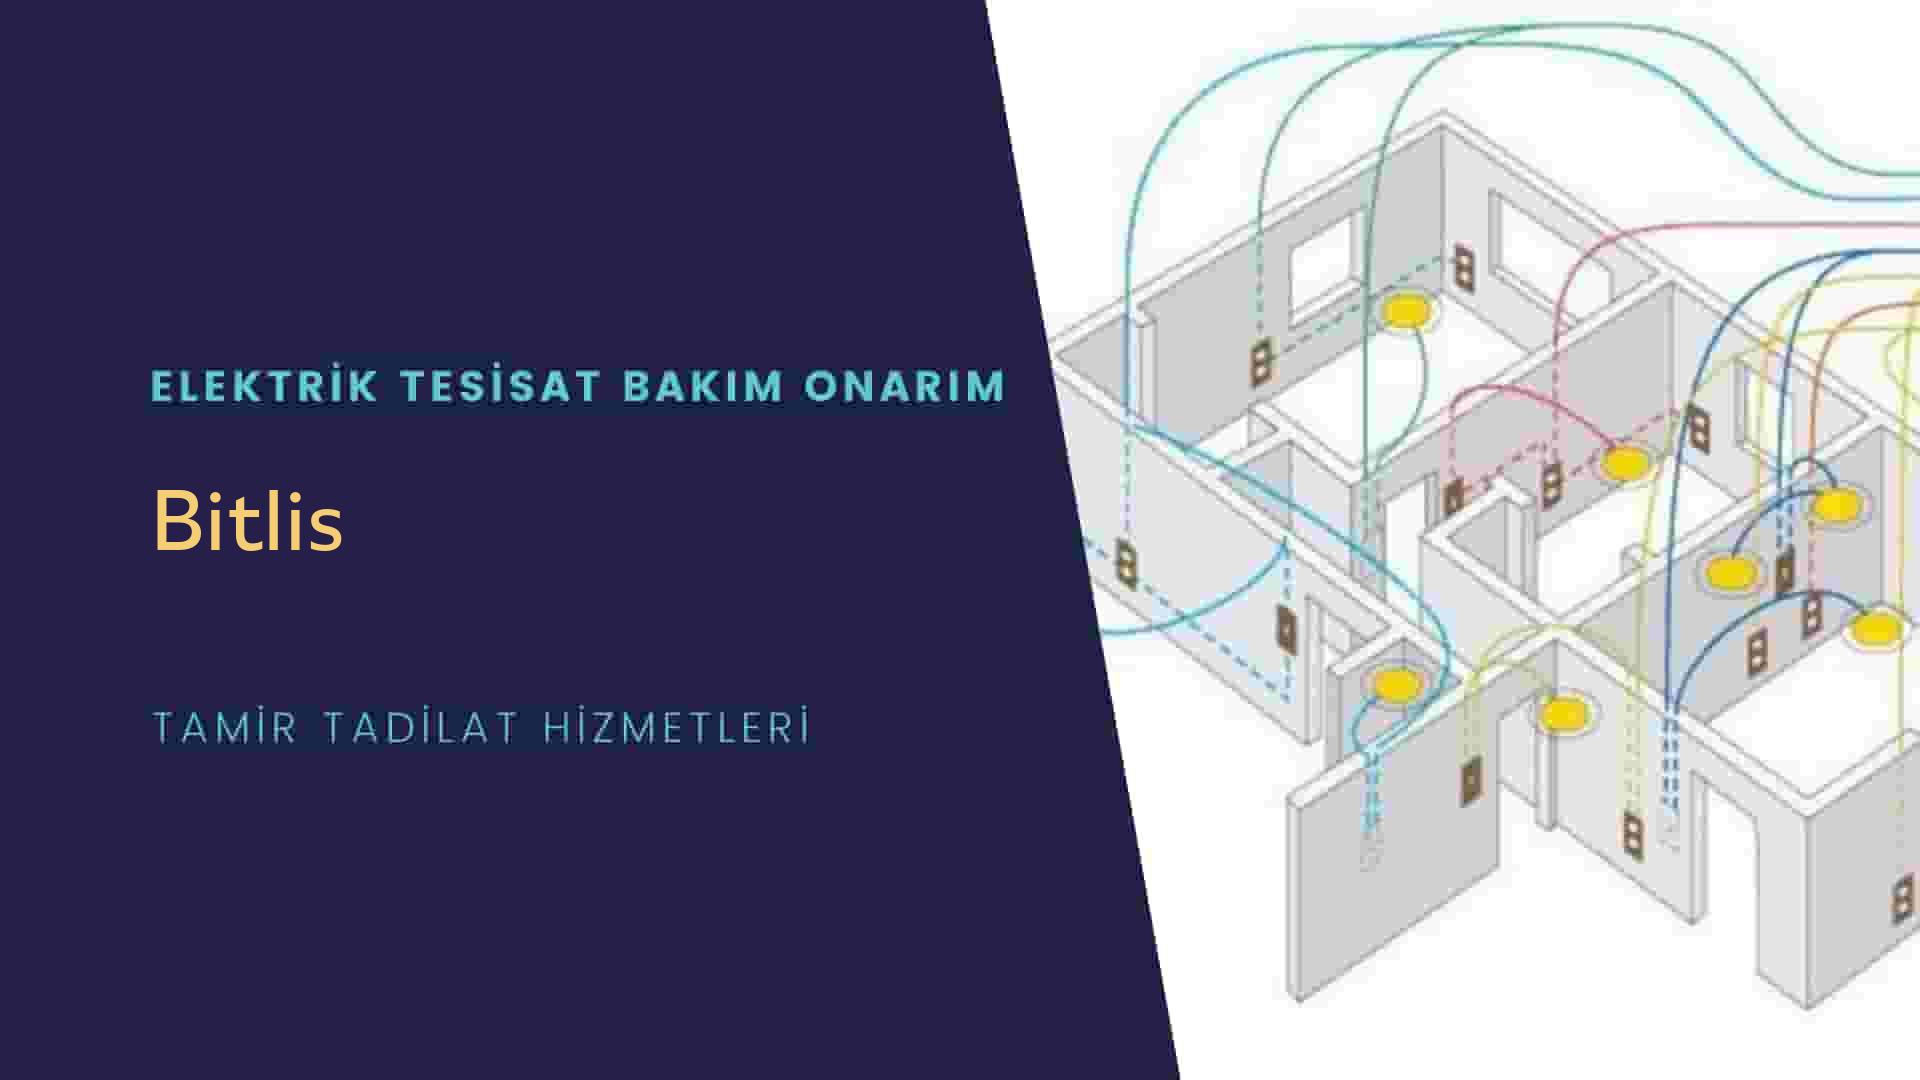 Bitlis'te elektrik tesisatı ustalarımı arıyorsunuz doğru adrestenizi Bitlis elektrik tesisatı ustalarımız 7/24 sizlere hizmet vermekten mutluluk duyar.